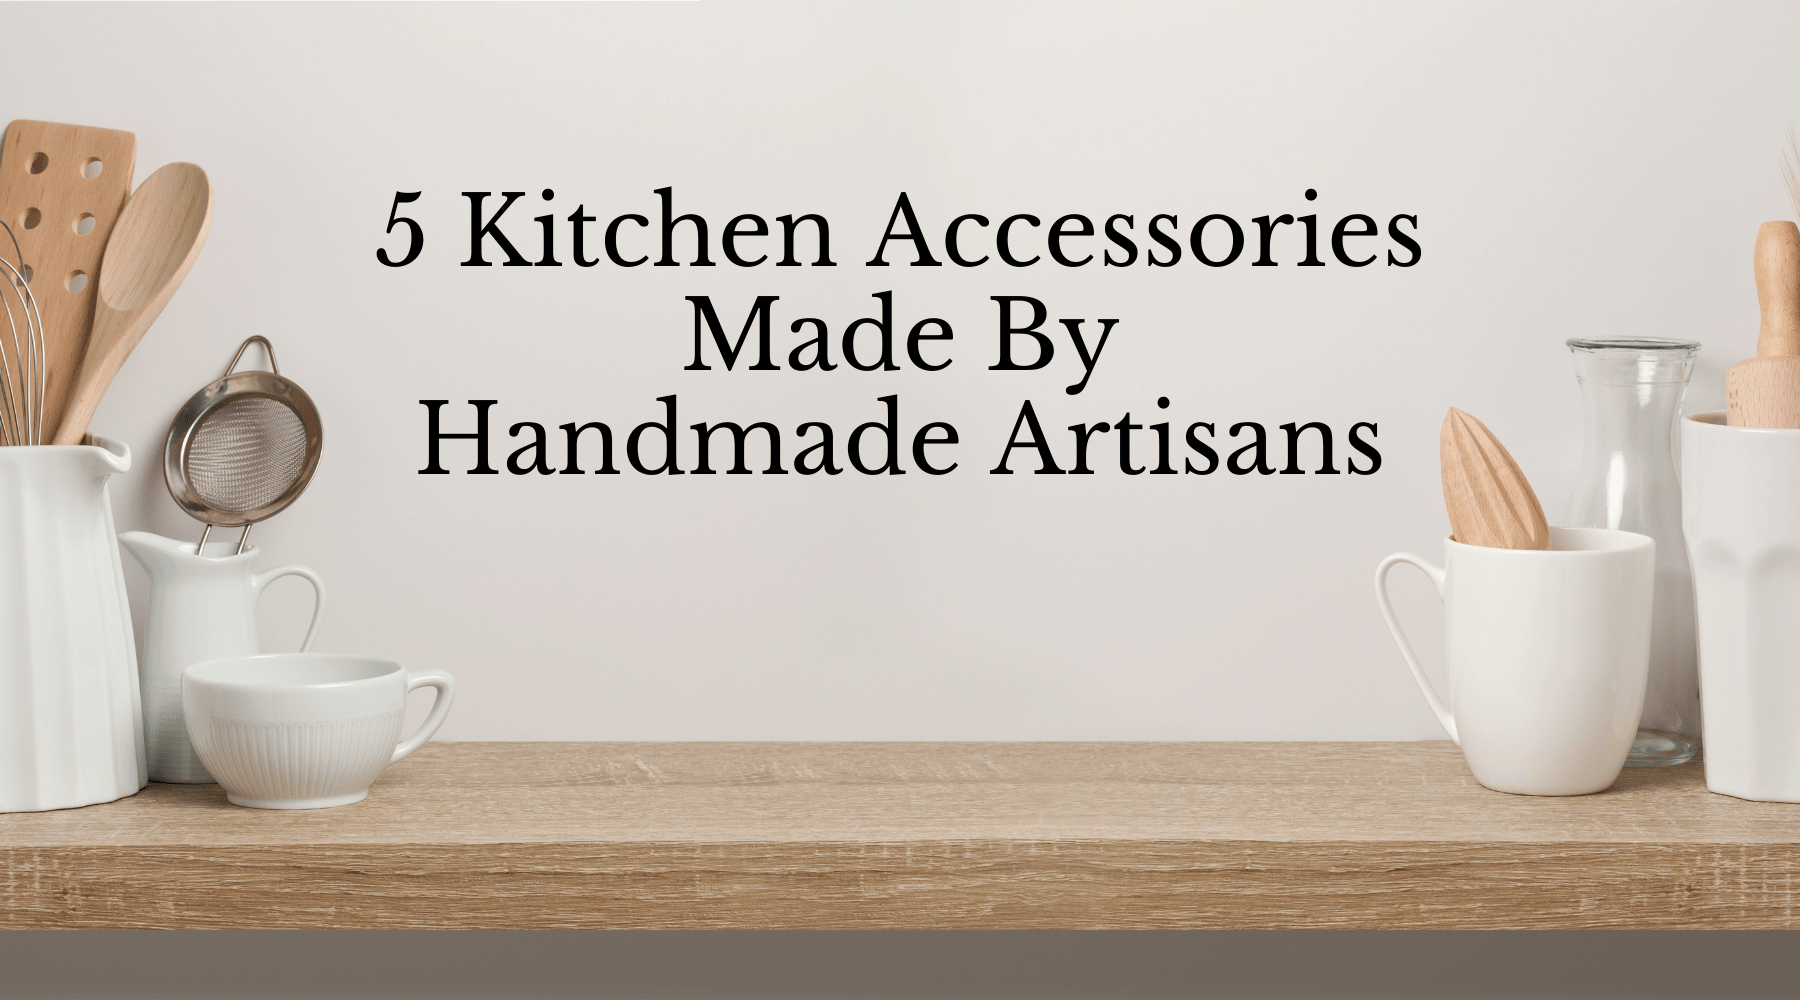 5 Kitchen Accessories Made By Handmade Artisans